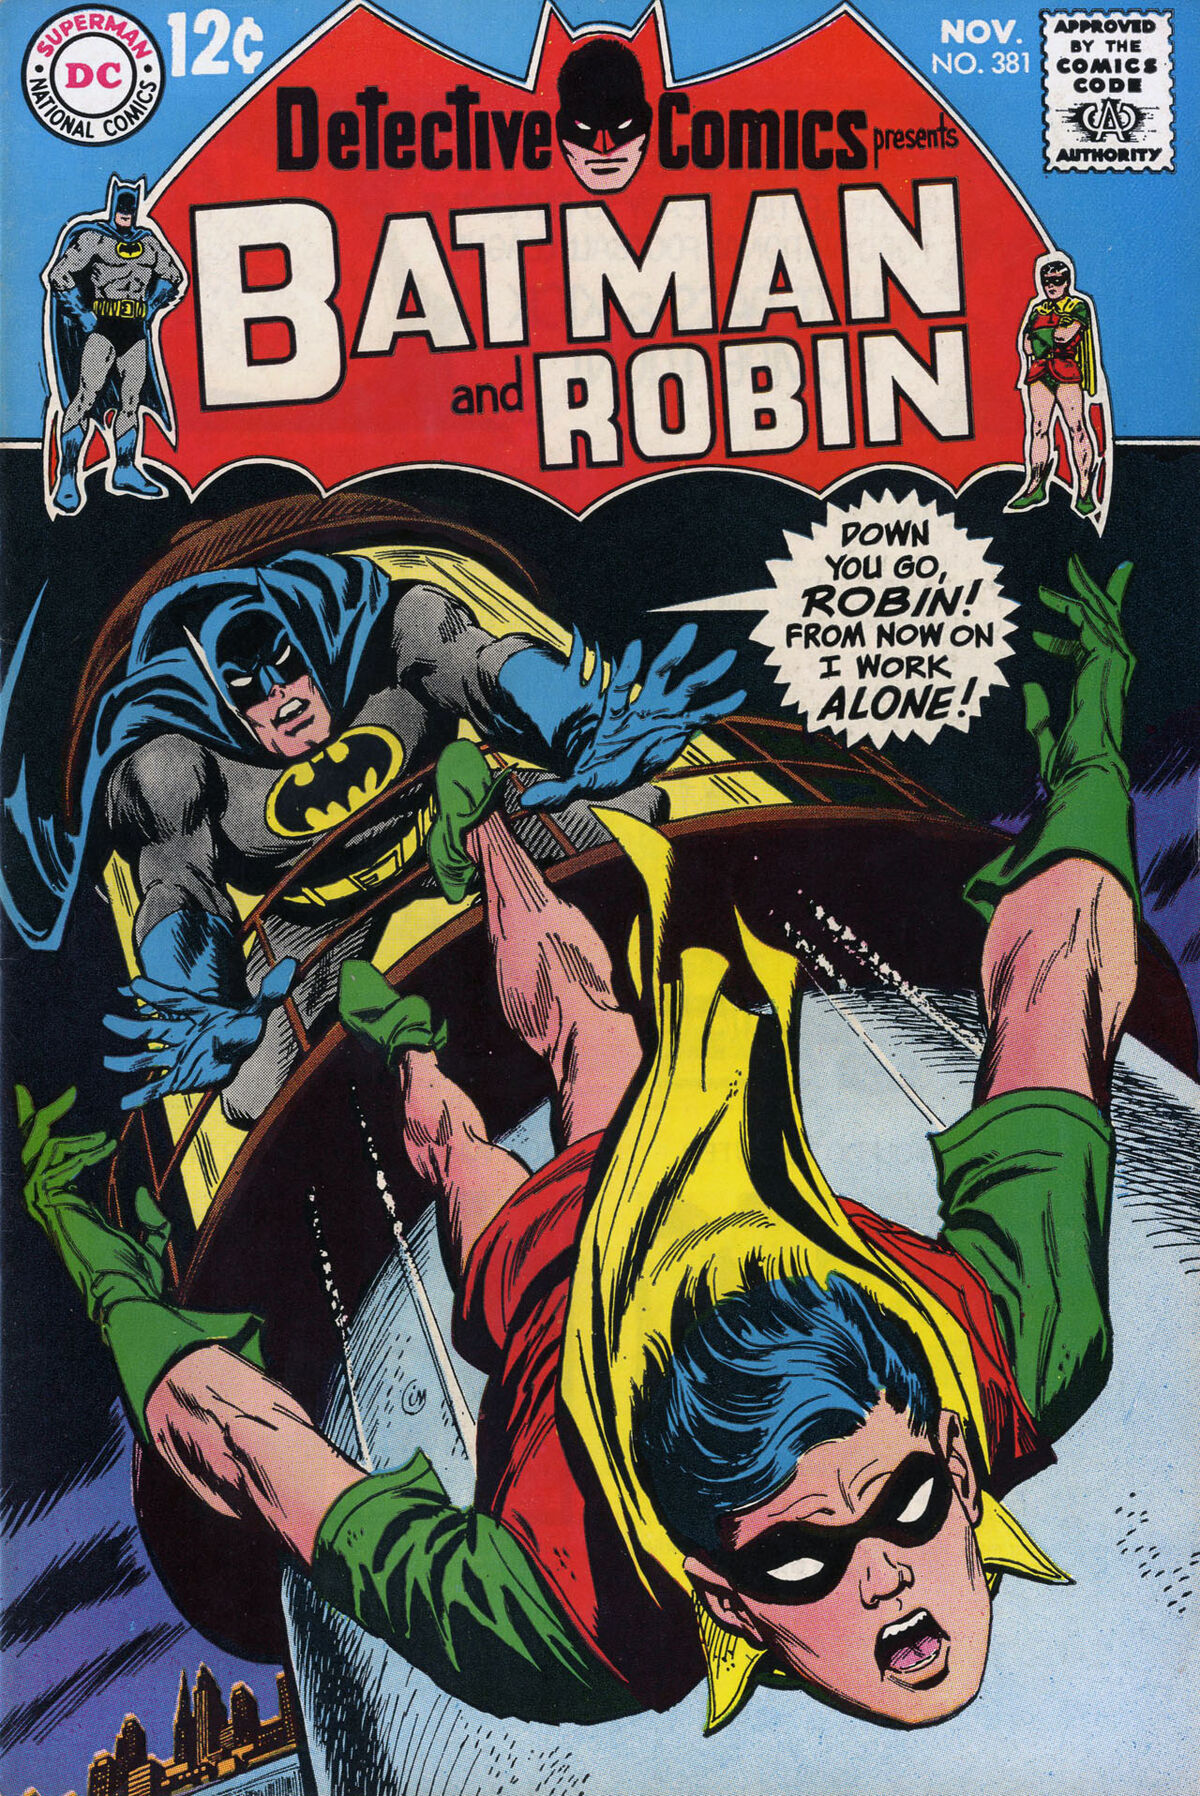 Detective Comics Vol 1 381 | DC Database | Fandom